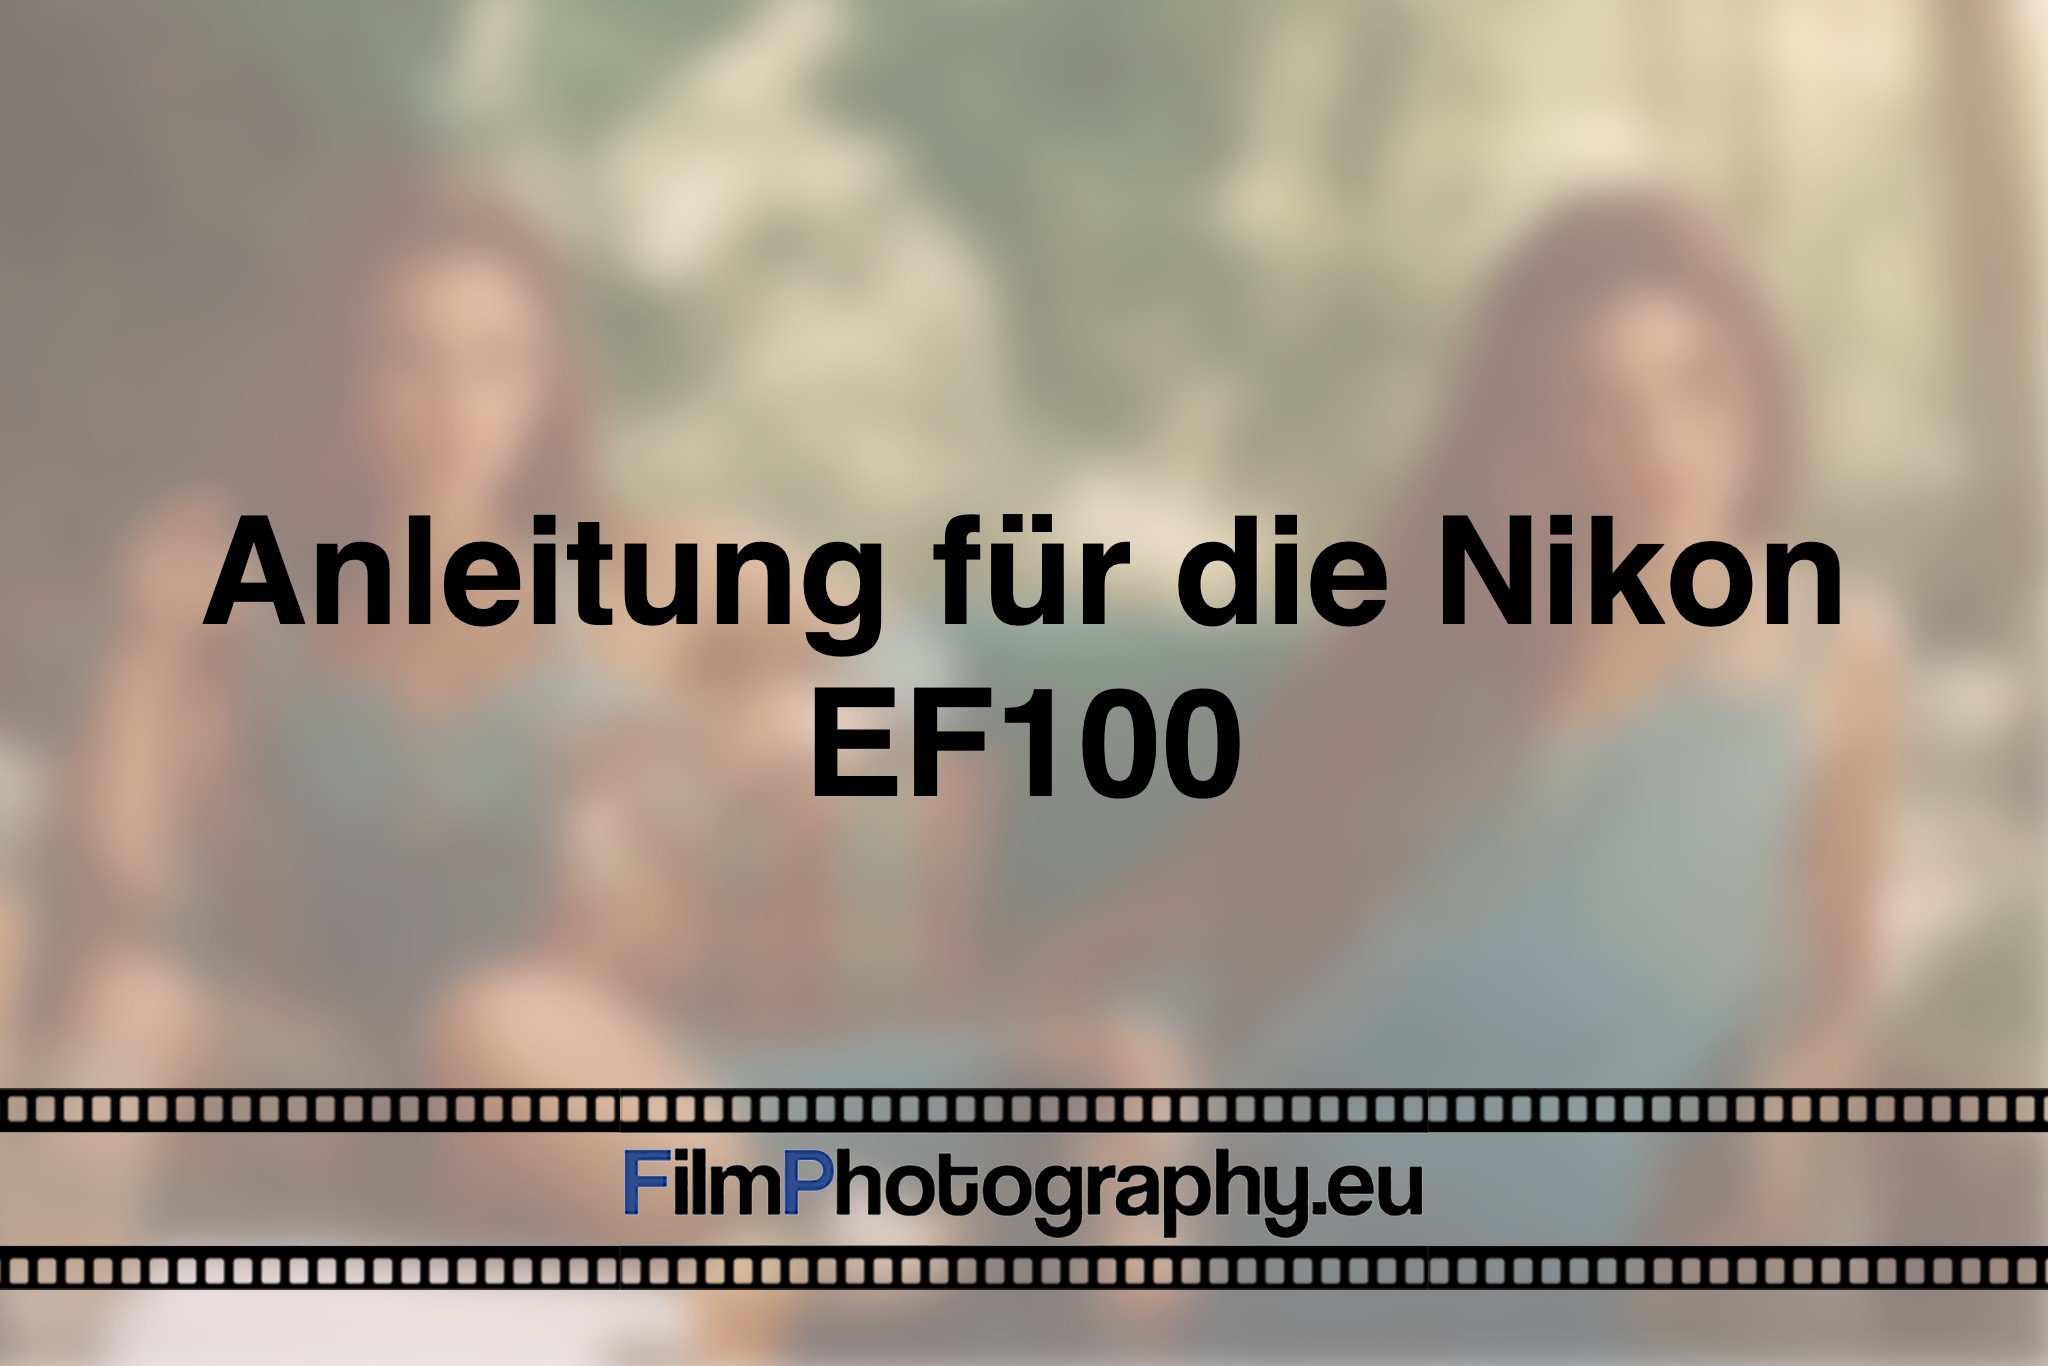 anleitung-fuer-die-nikon-ef100-photo-bnv